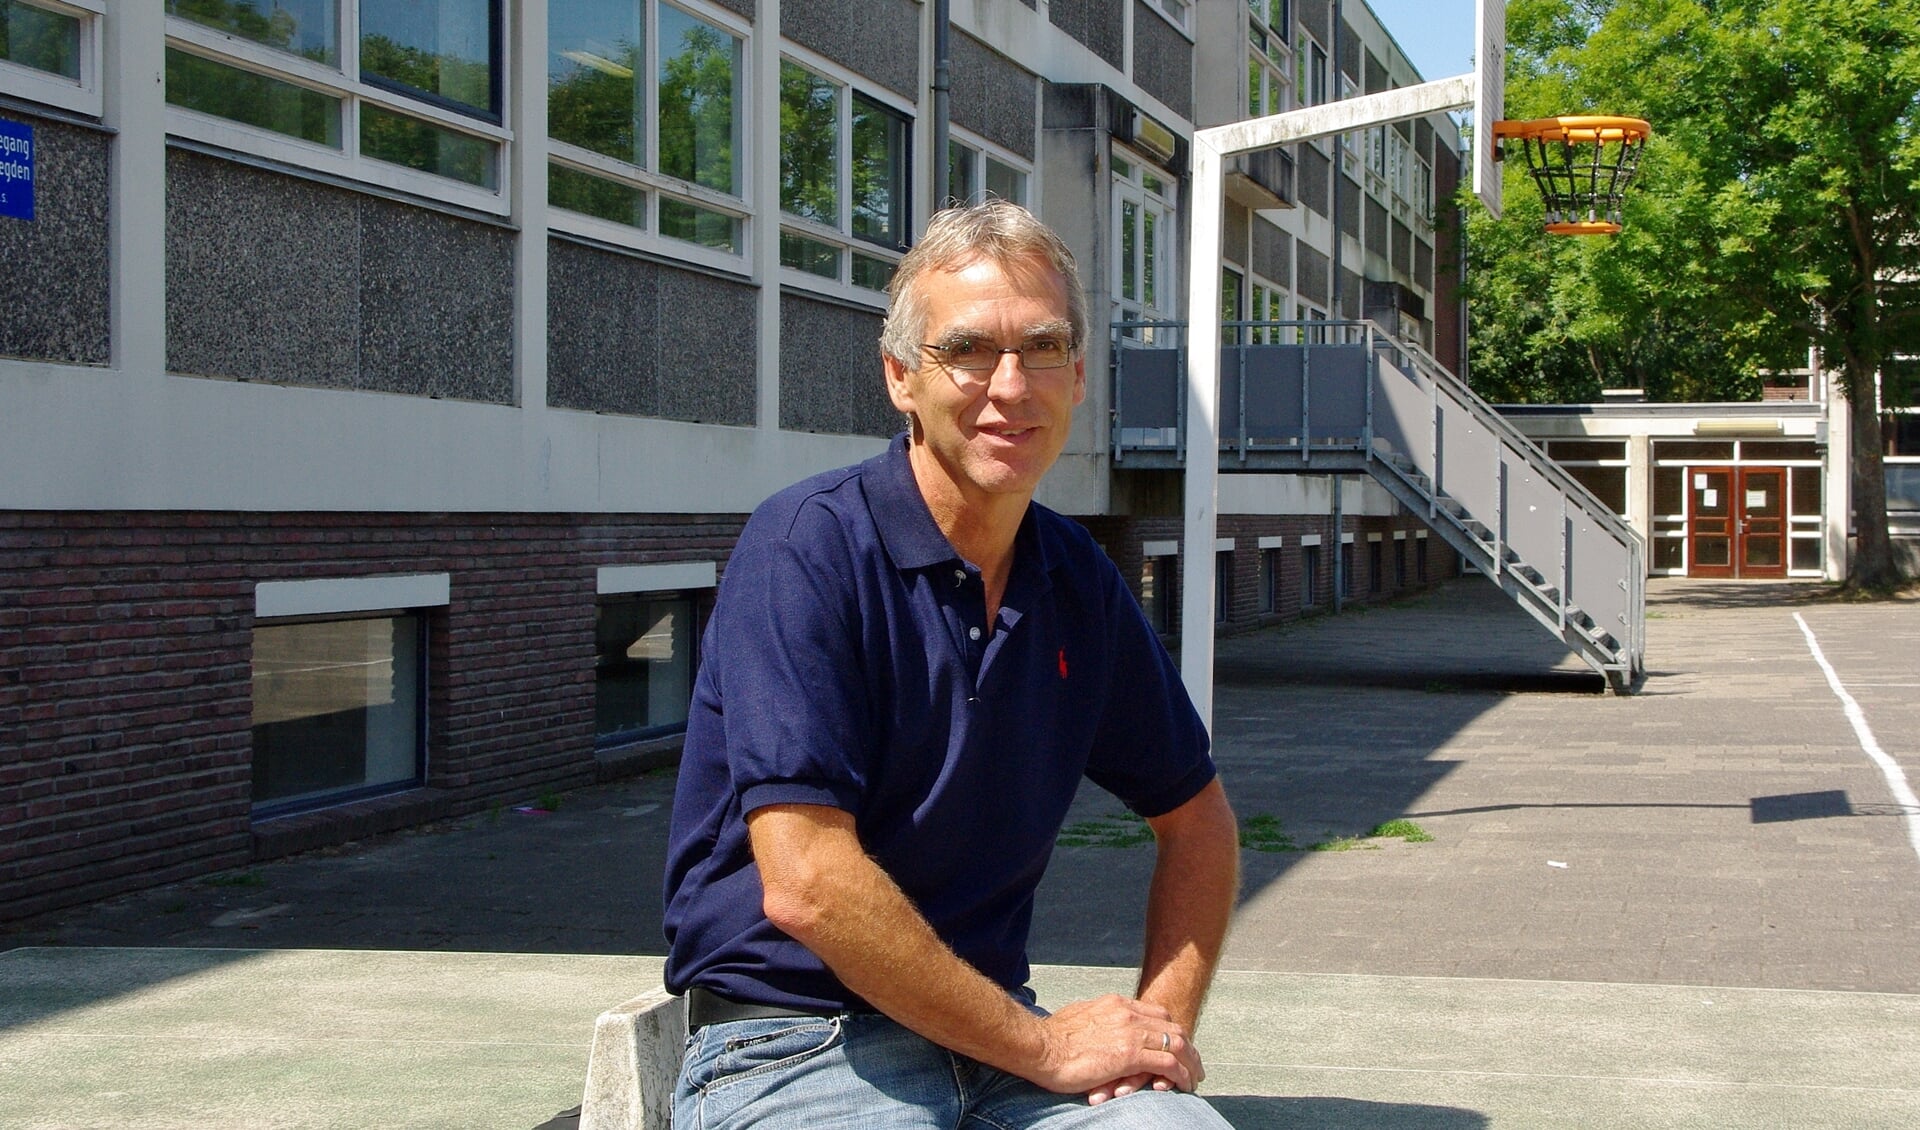 Directeur Douwe Splinter van de Kannerschool hoopt op een goede oplossing en betere huisvesting voor zijn school. | Archieffoto Willemien Timmers